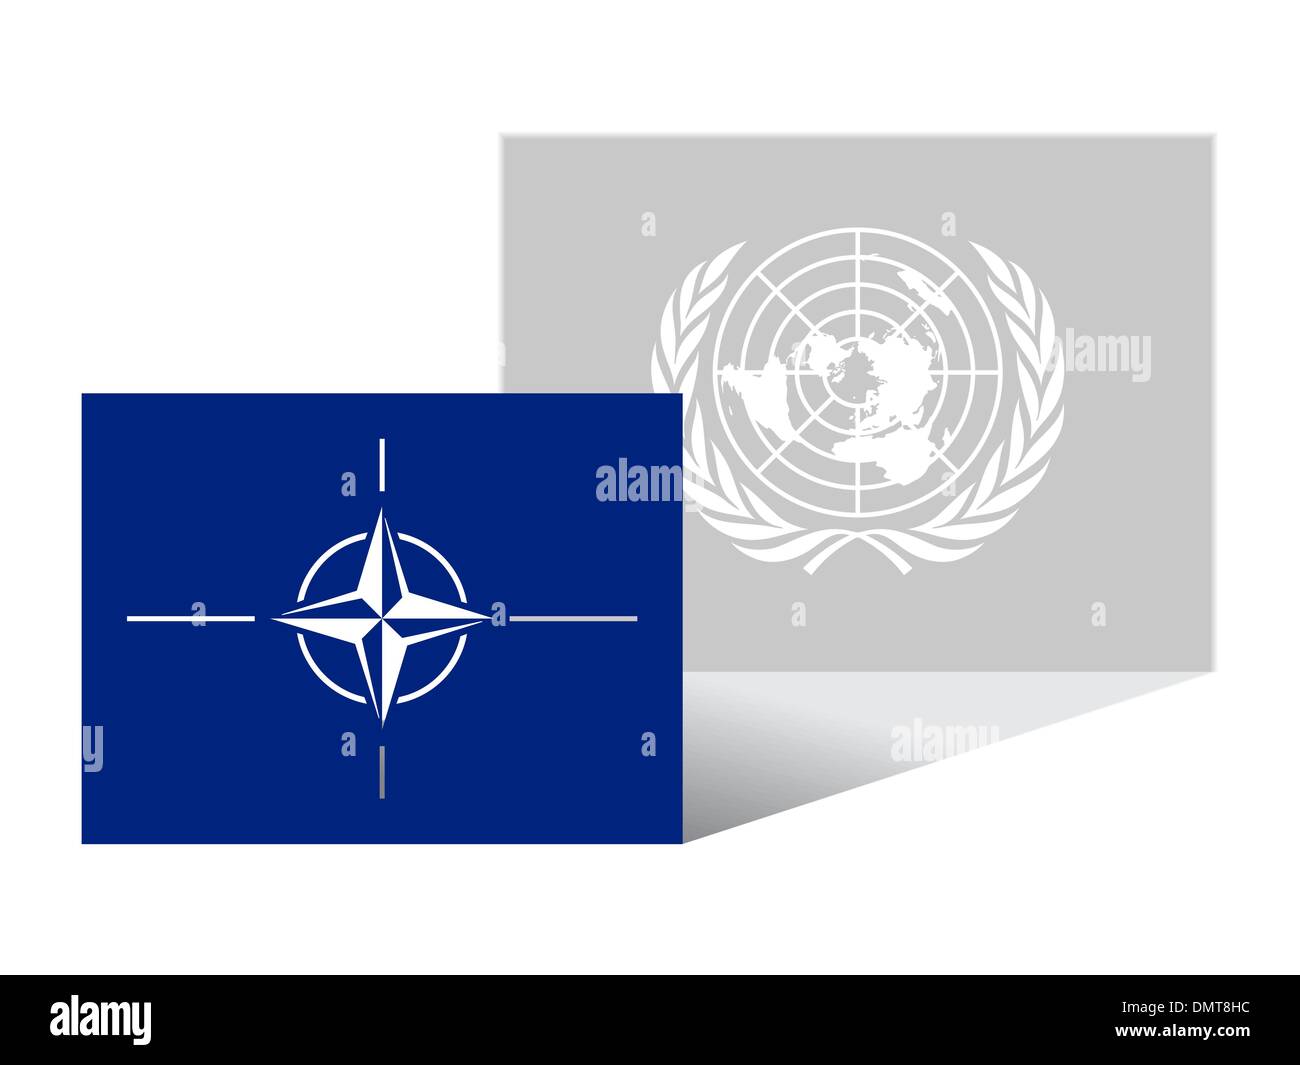 Vereinten Nationen sind ein Schatten der NATO Stock Vektor